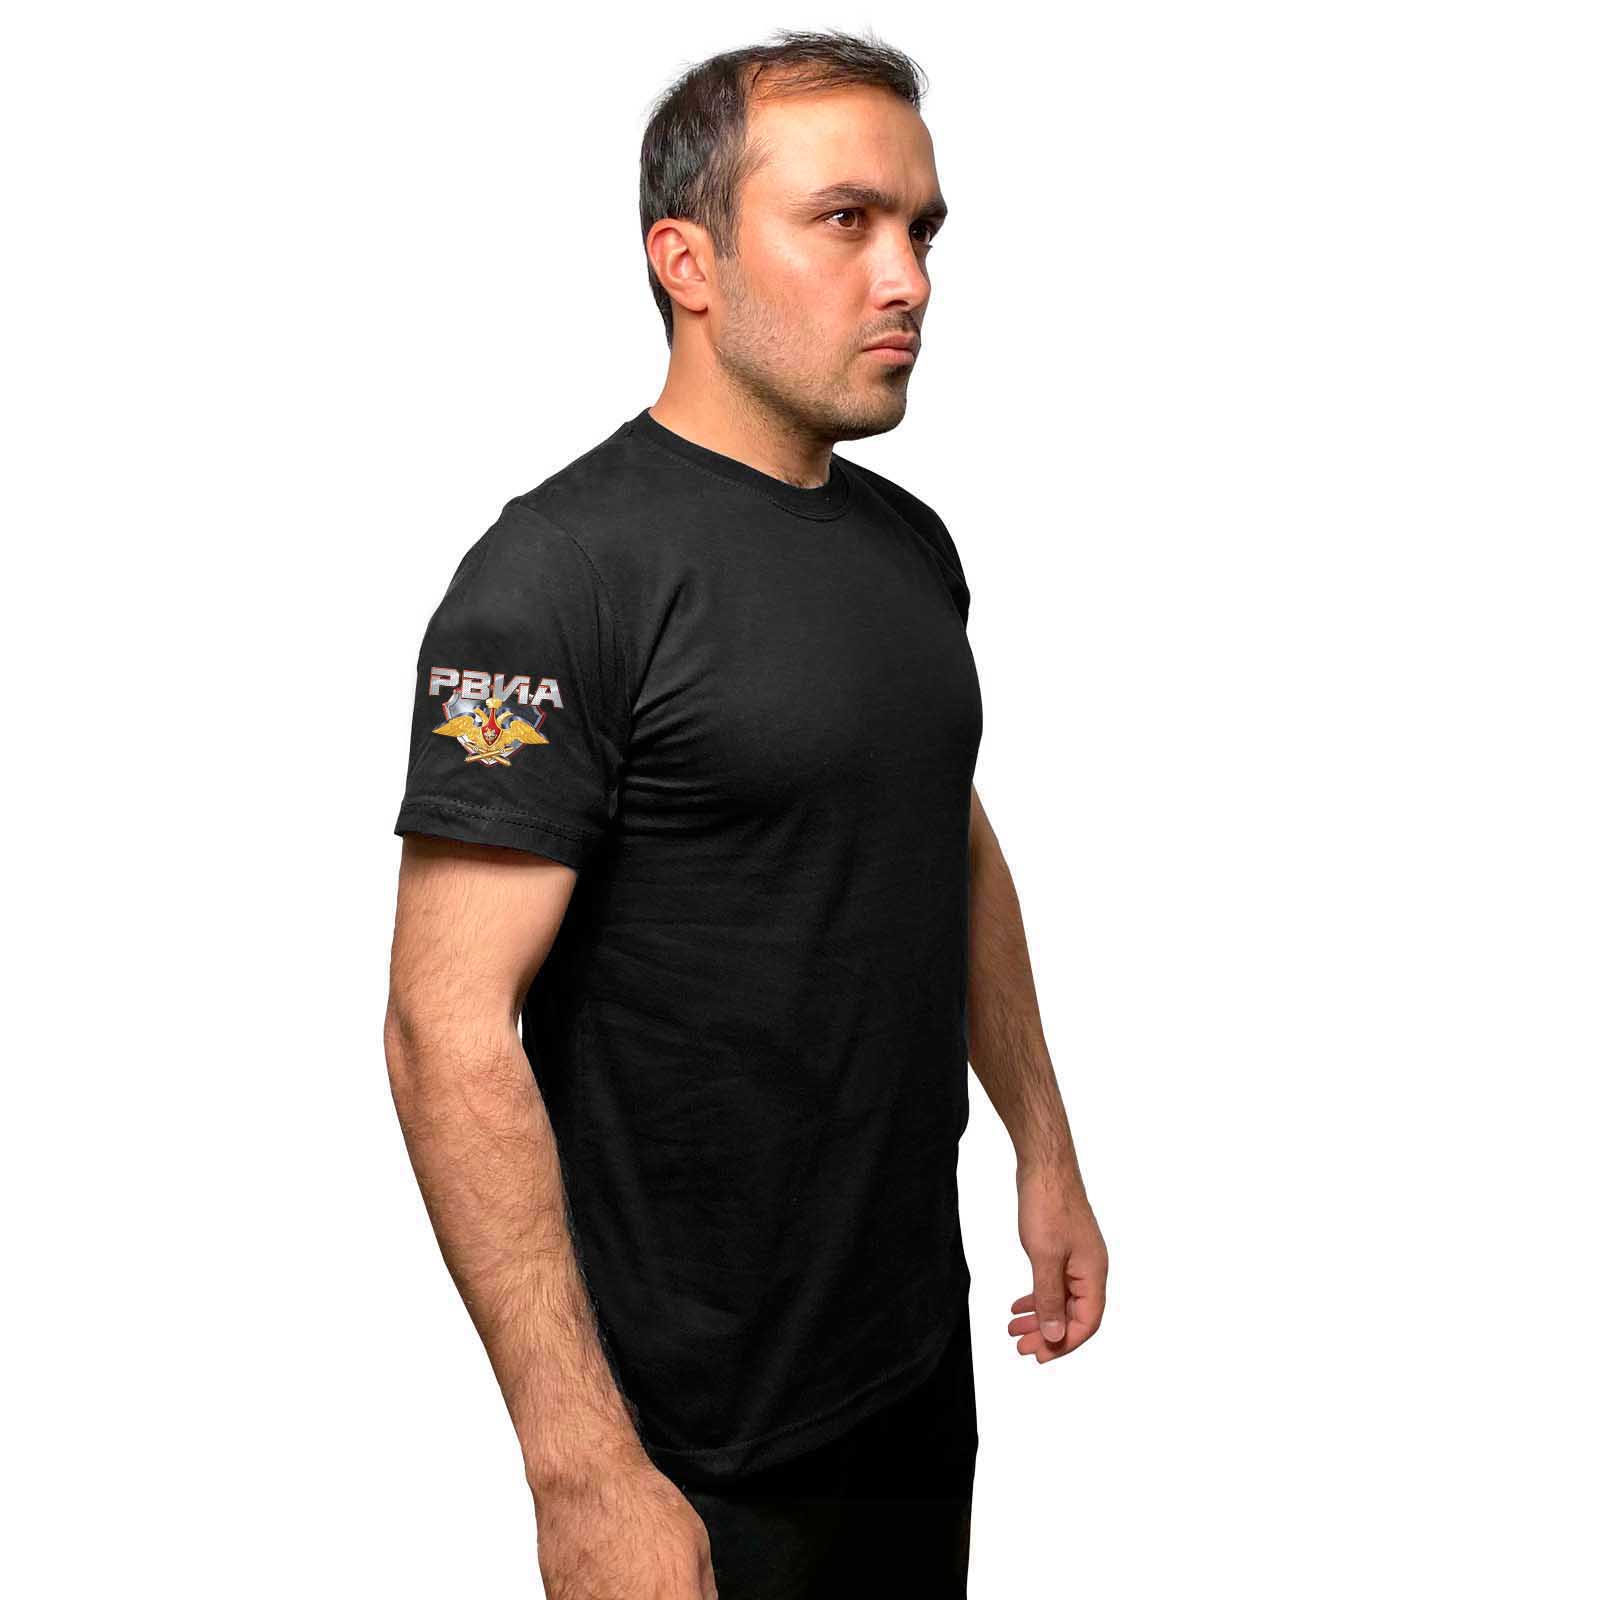 Купить стильную черную футболку с термотрансфером РВиА онлайн